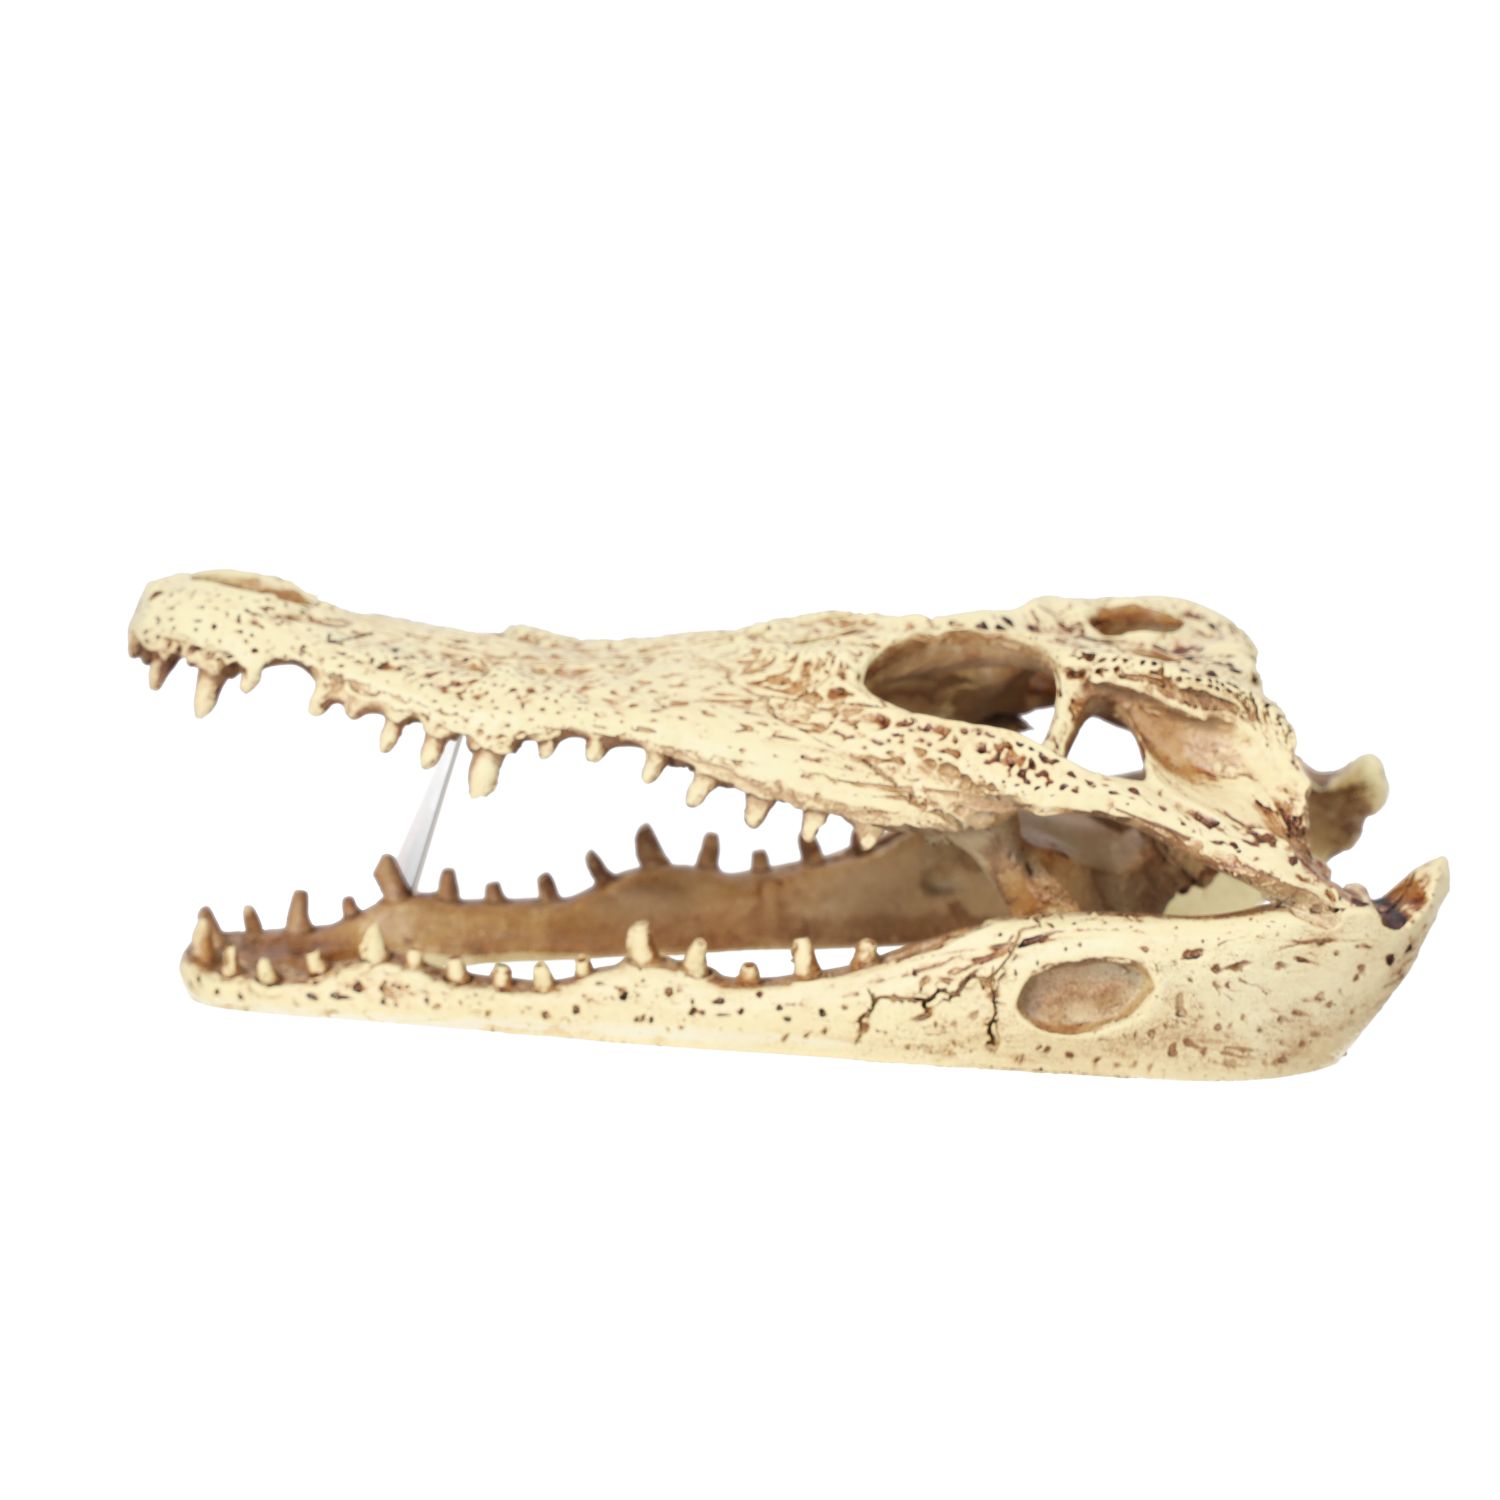 PR Crocodile Skull 24x11.5x9cm DPS070